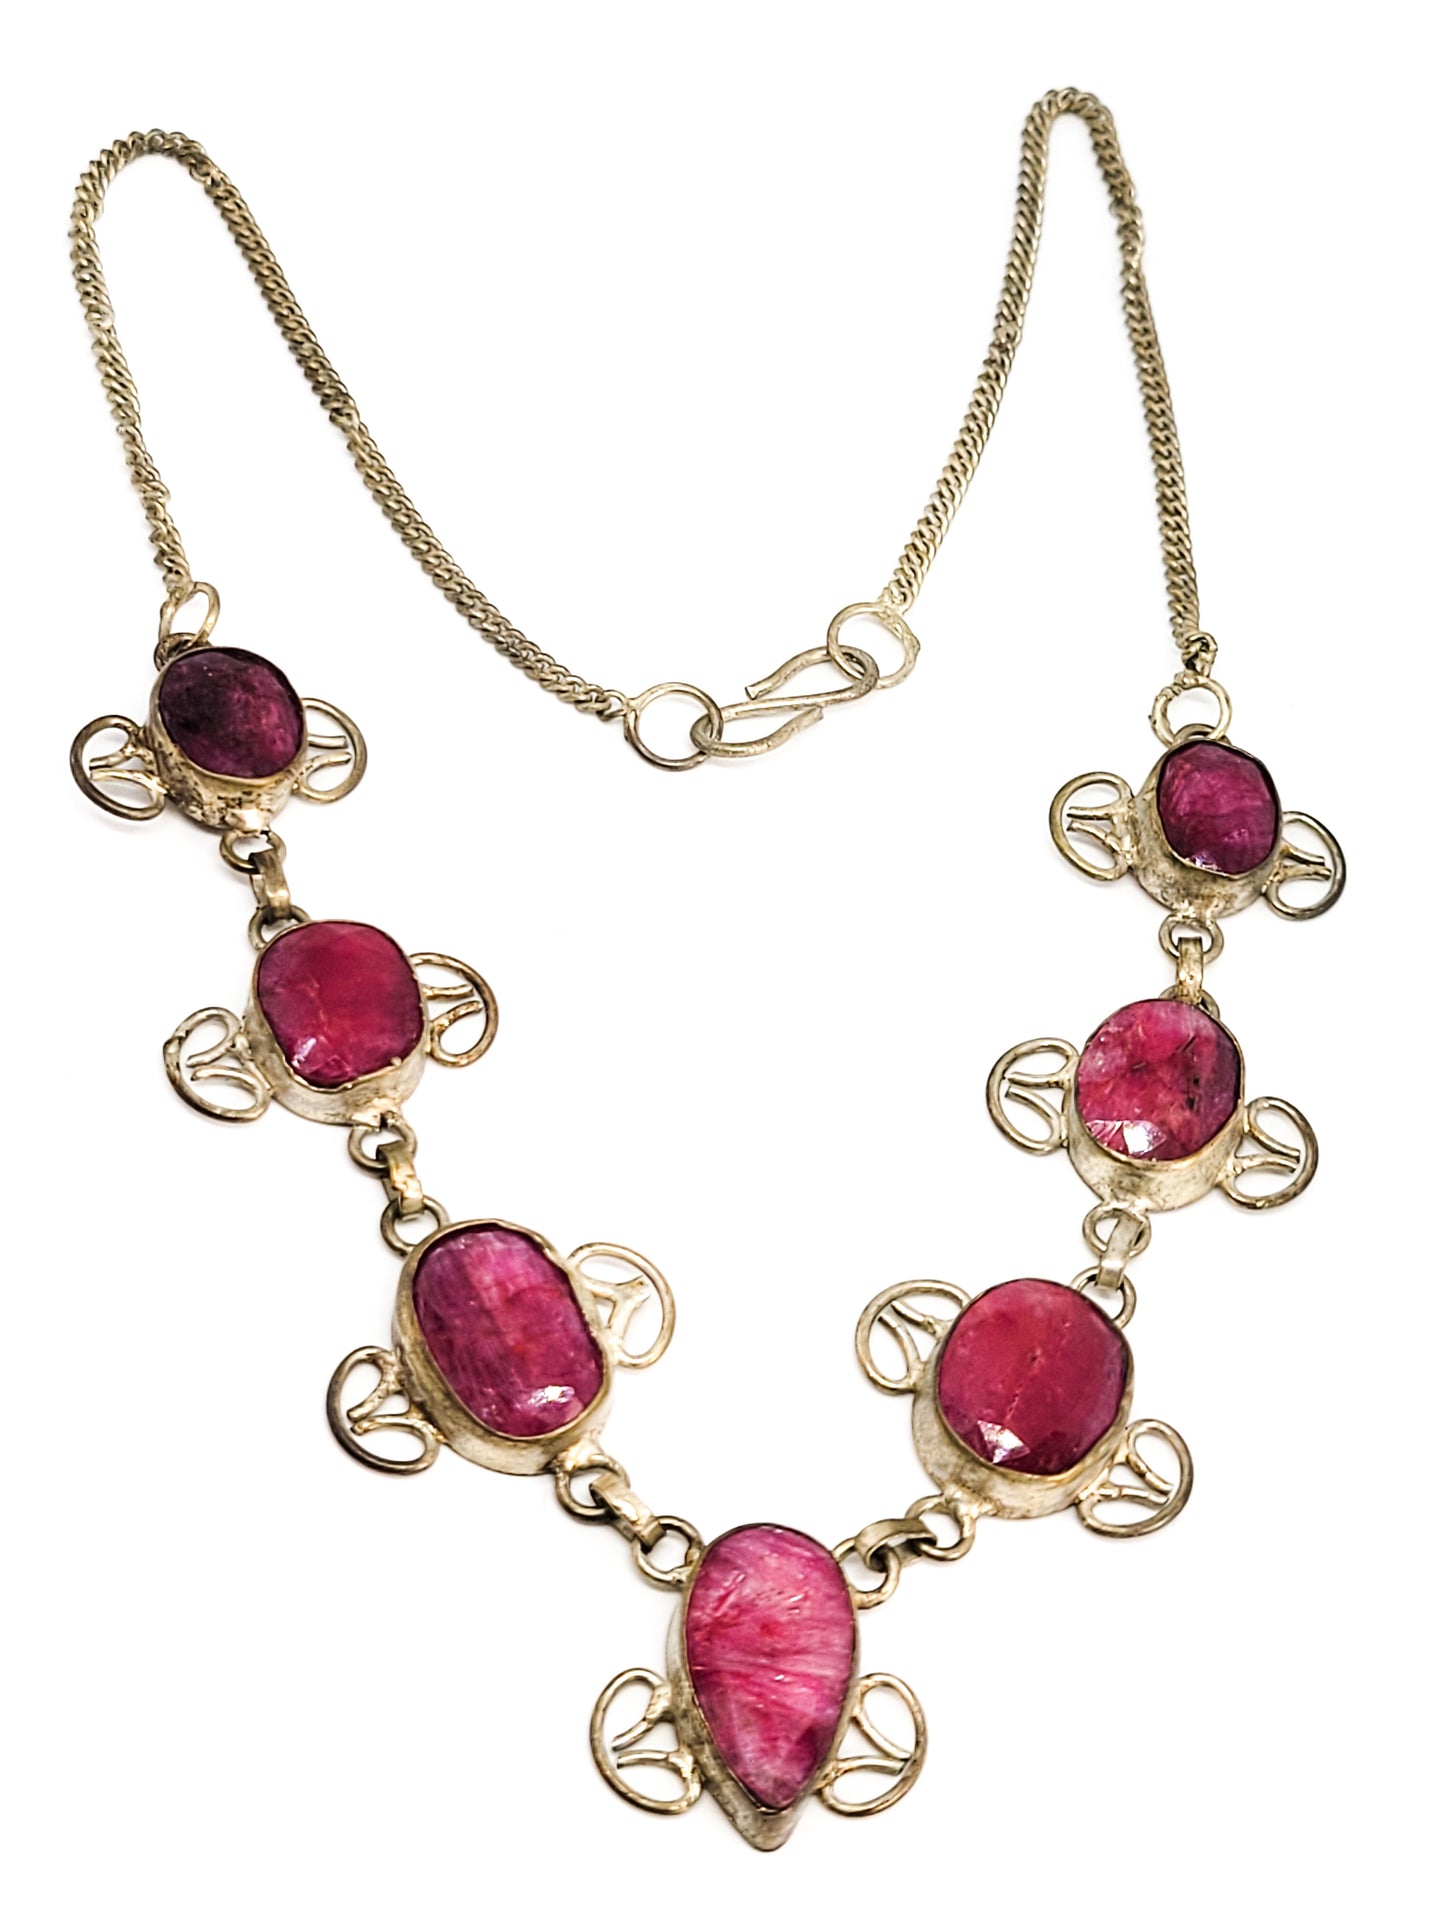 Pink Spinel faceted gemstone vintage tribal bali necklace